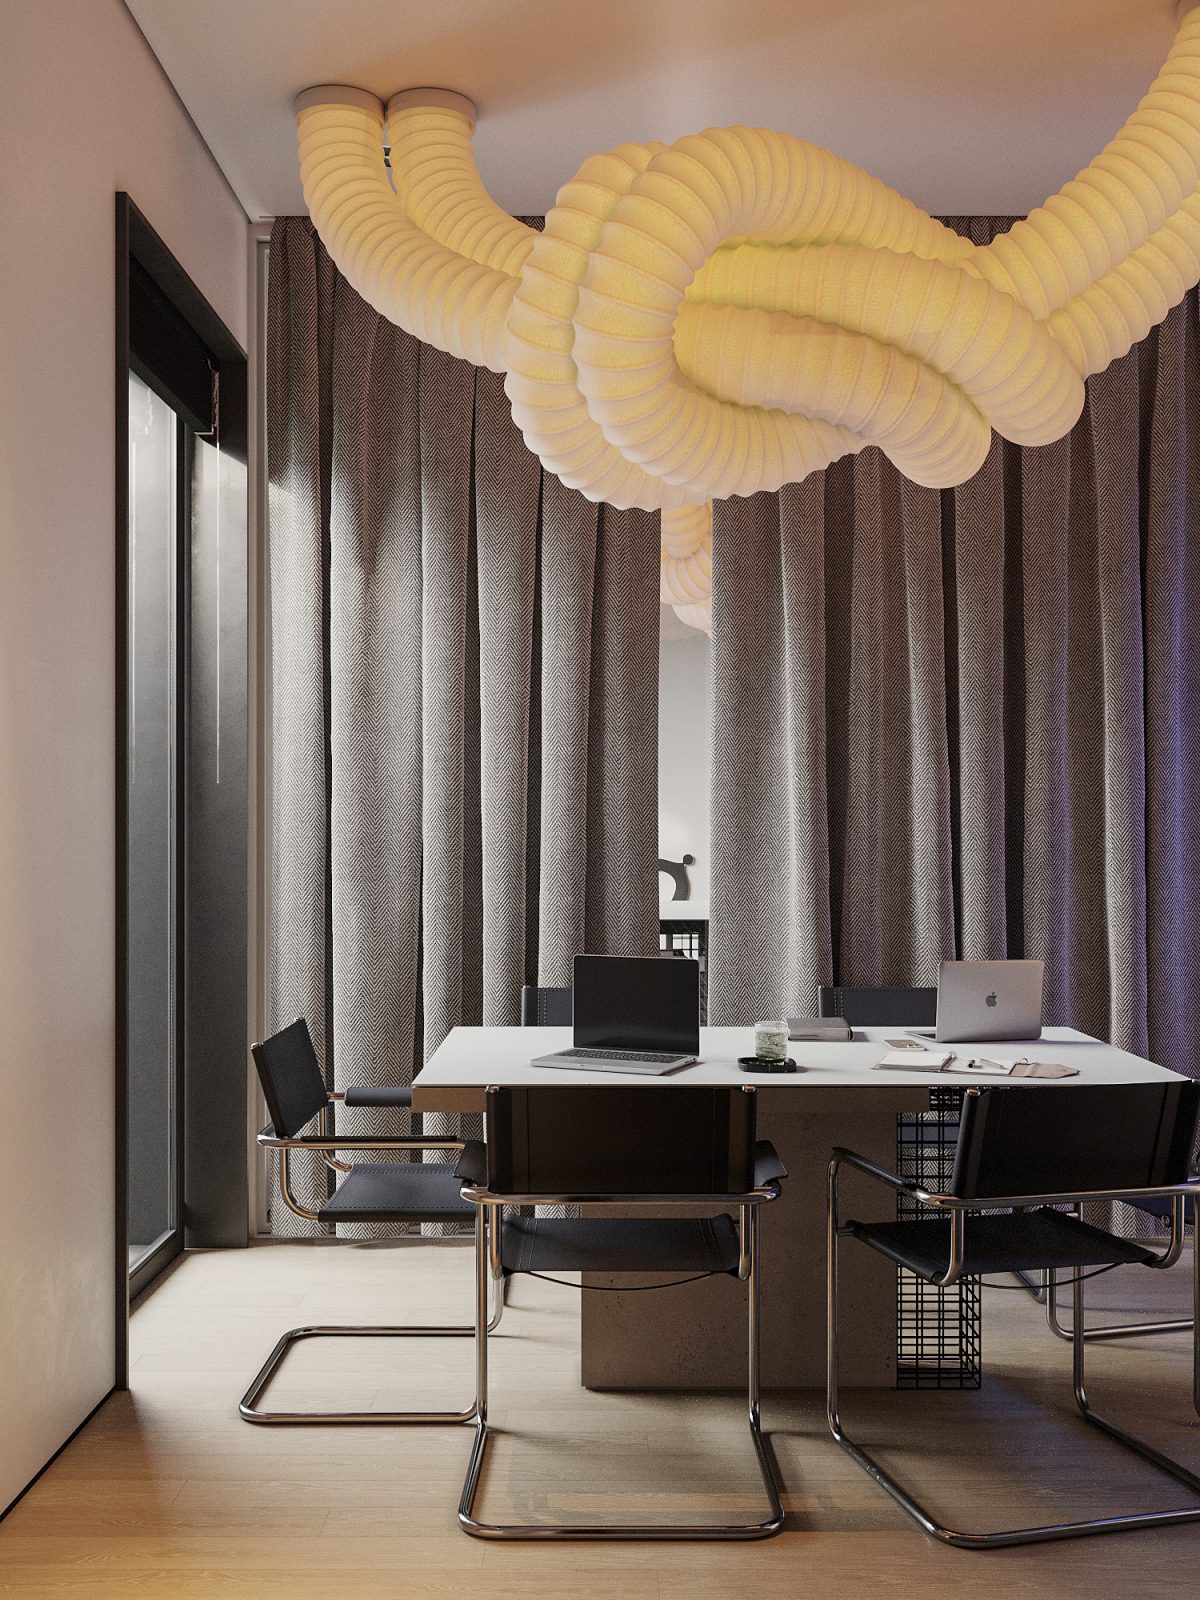 Журнал INTERIOR DESIGN включив дизайн офісу від ZIKZAK Architects до кращих проєктів нових робочих просторів зі всього світу 3 2